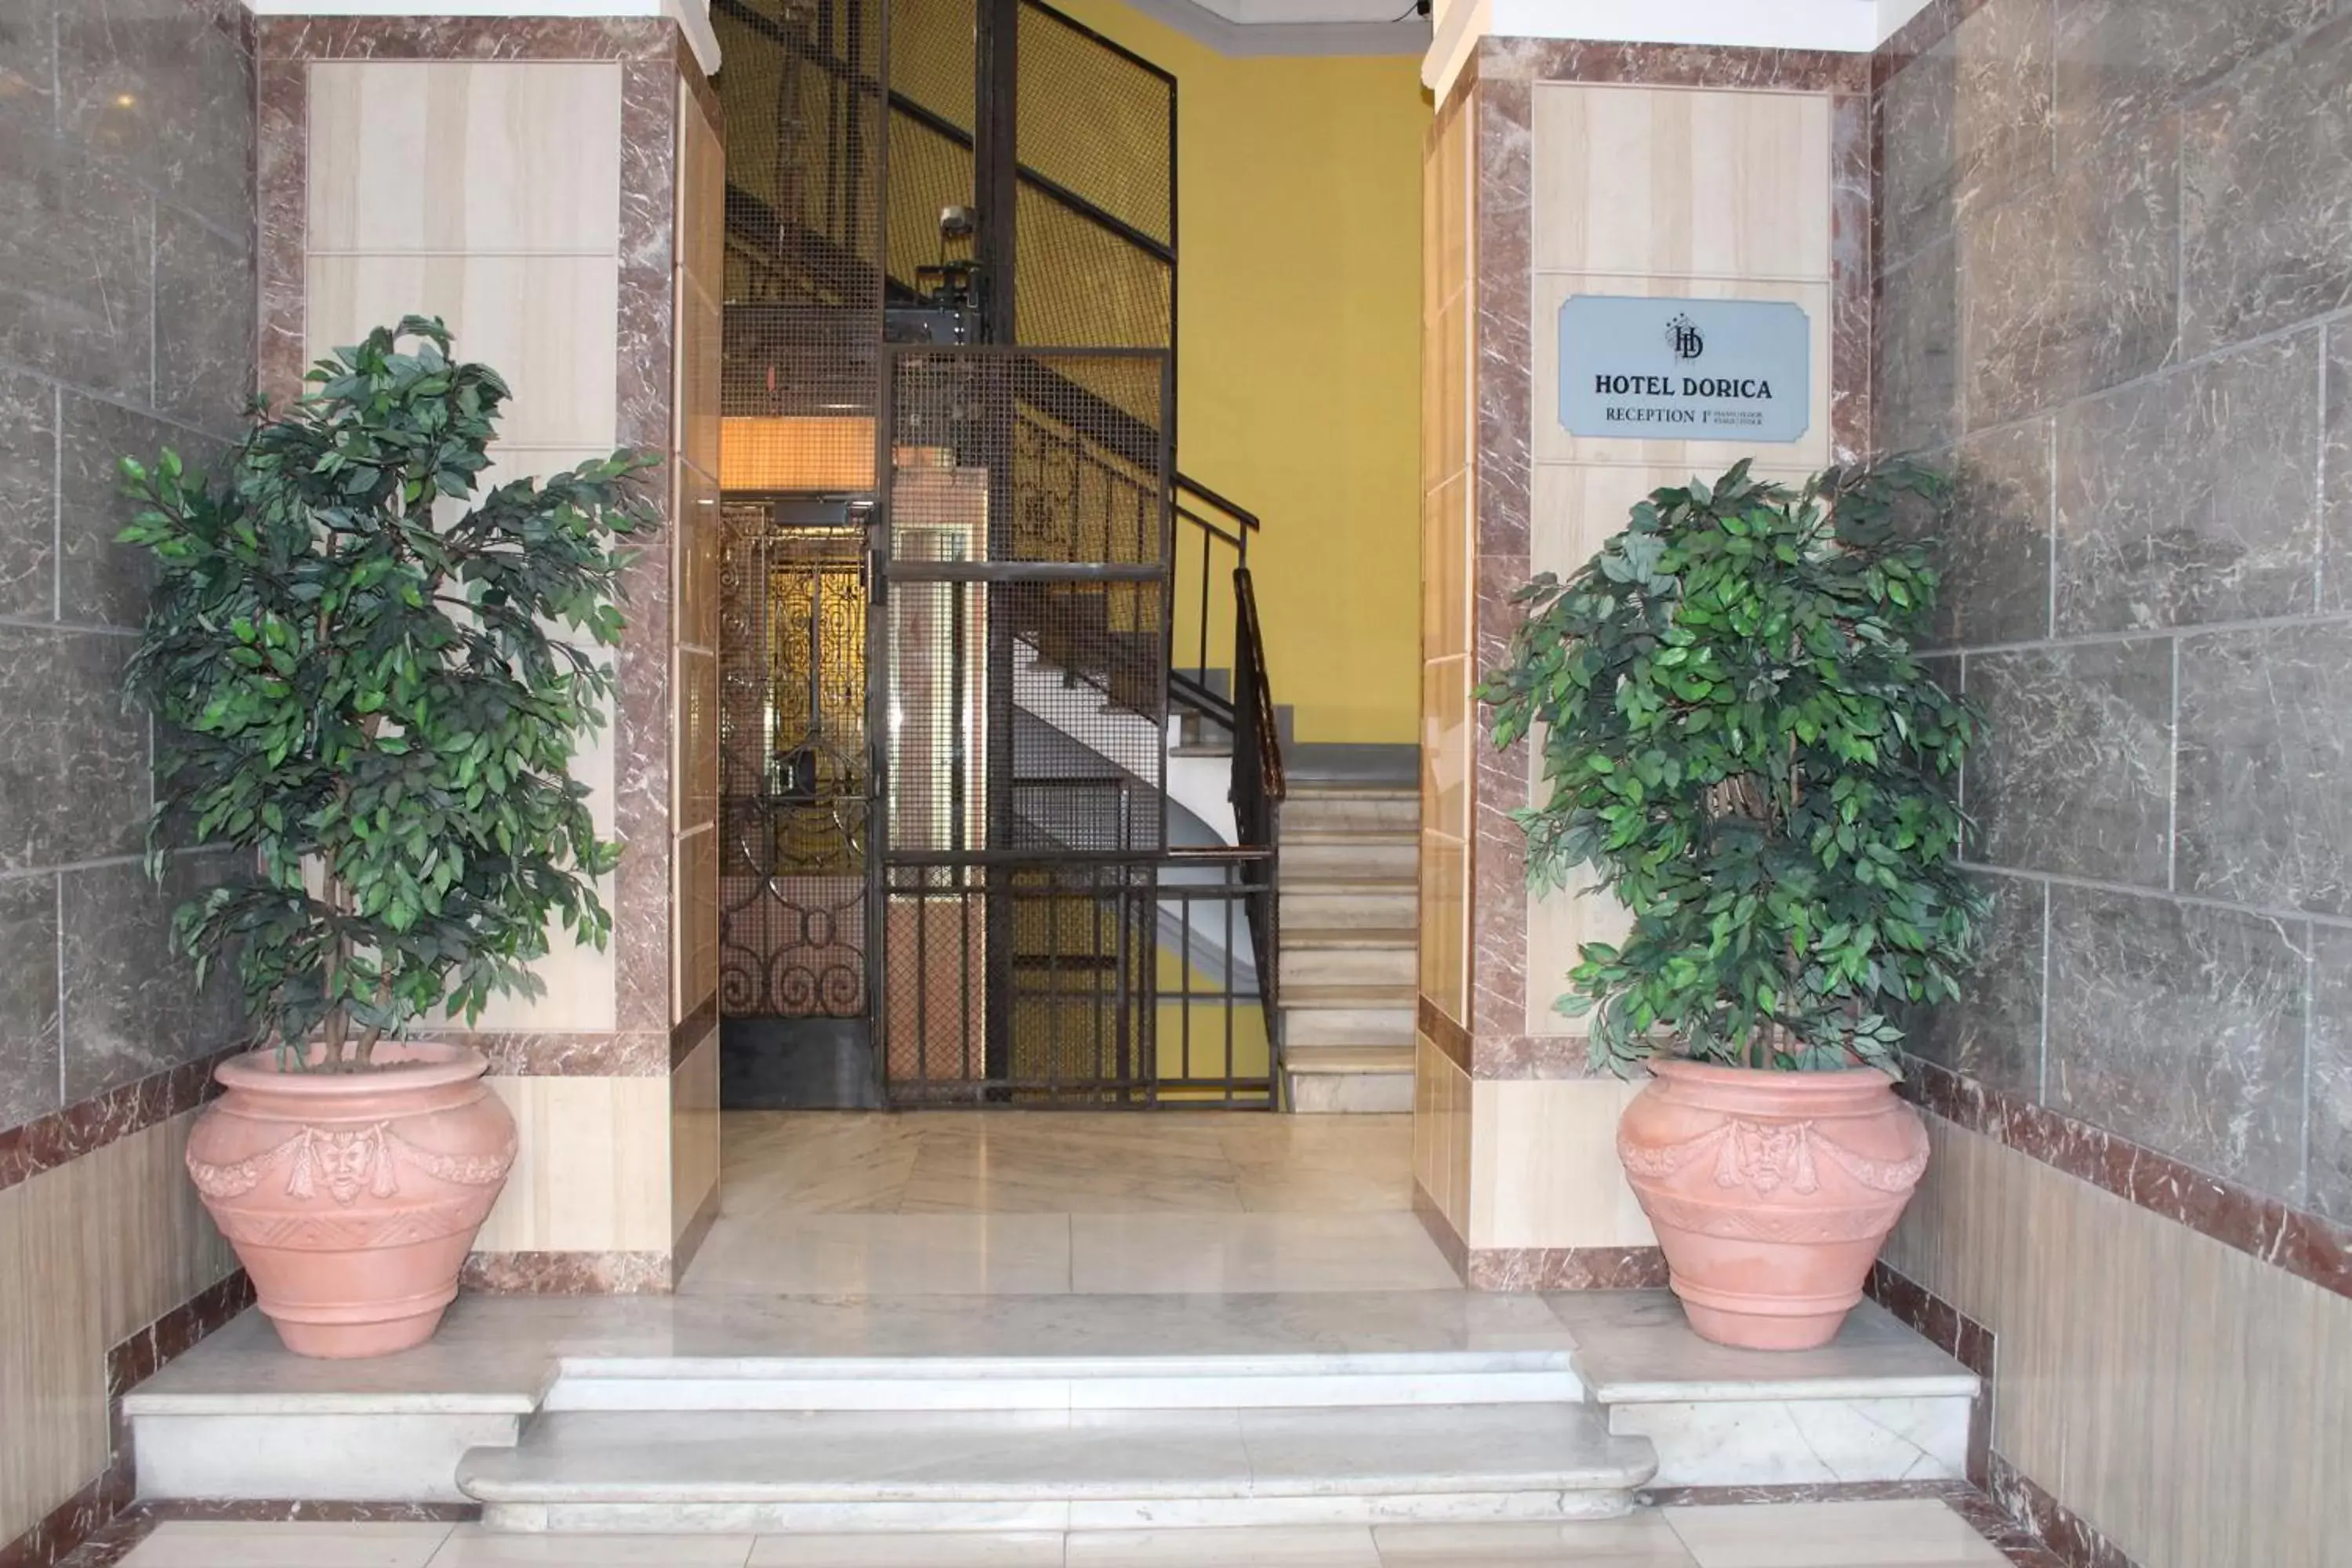 Facade/Entrance in Hotel Dorica